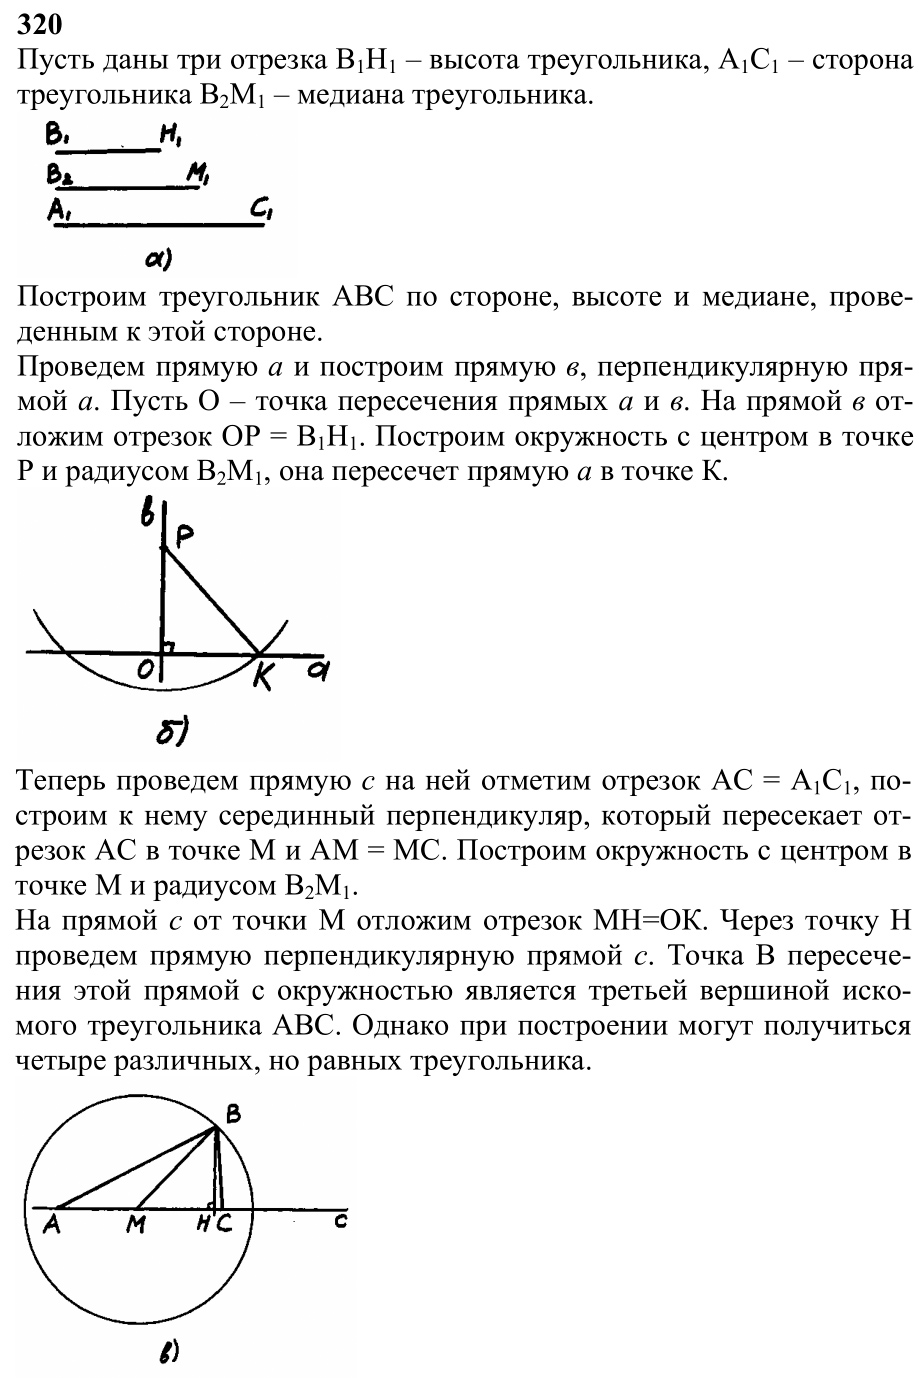 Ответ к задаче № 320 - Л.С.Атанасян, гдз по геометрии 7 класс